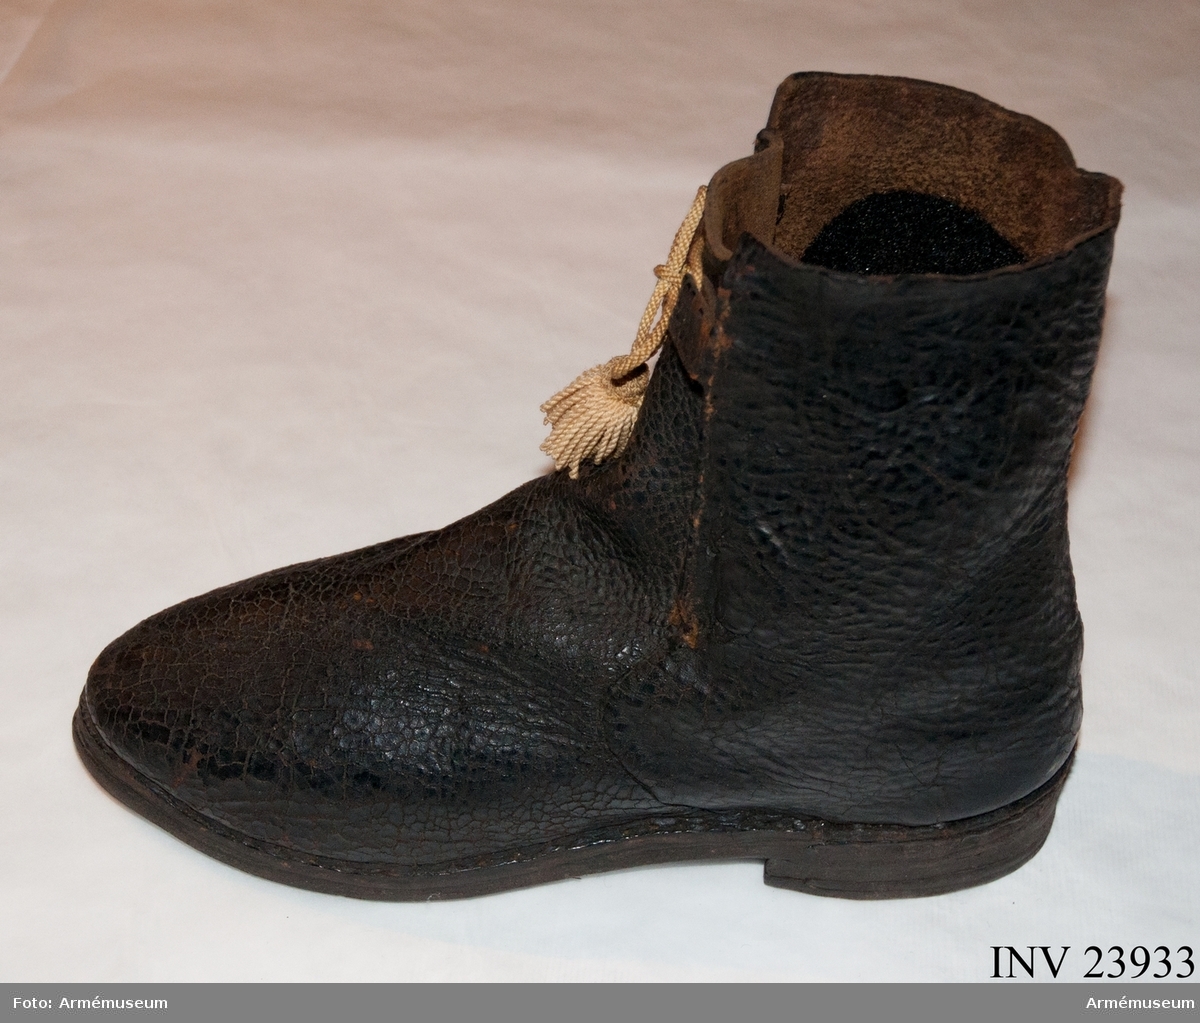 Känga av svart läder med snöre (senare tillägg). Det gula kängbandet på fotografier är AM.120193.